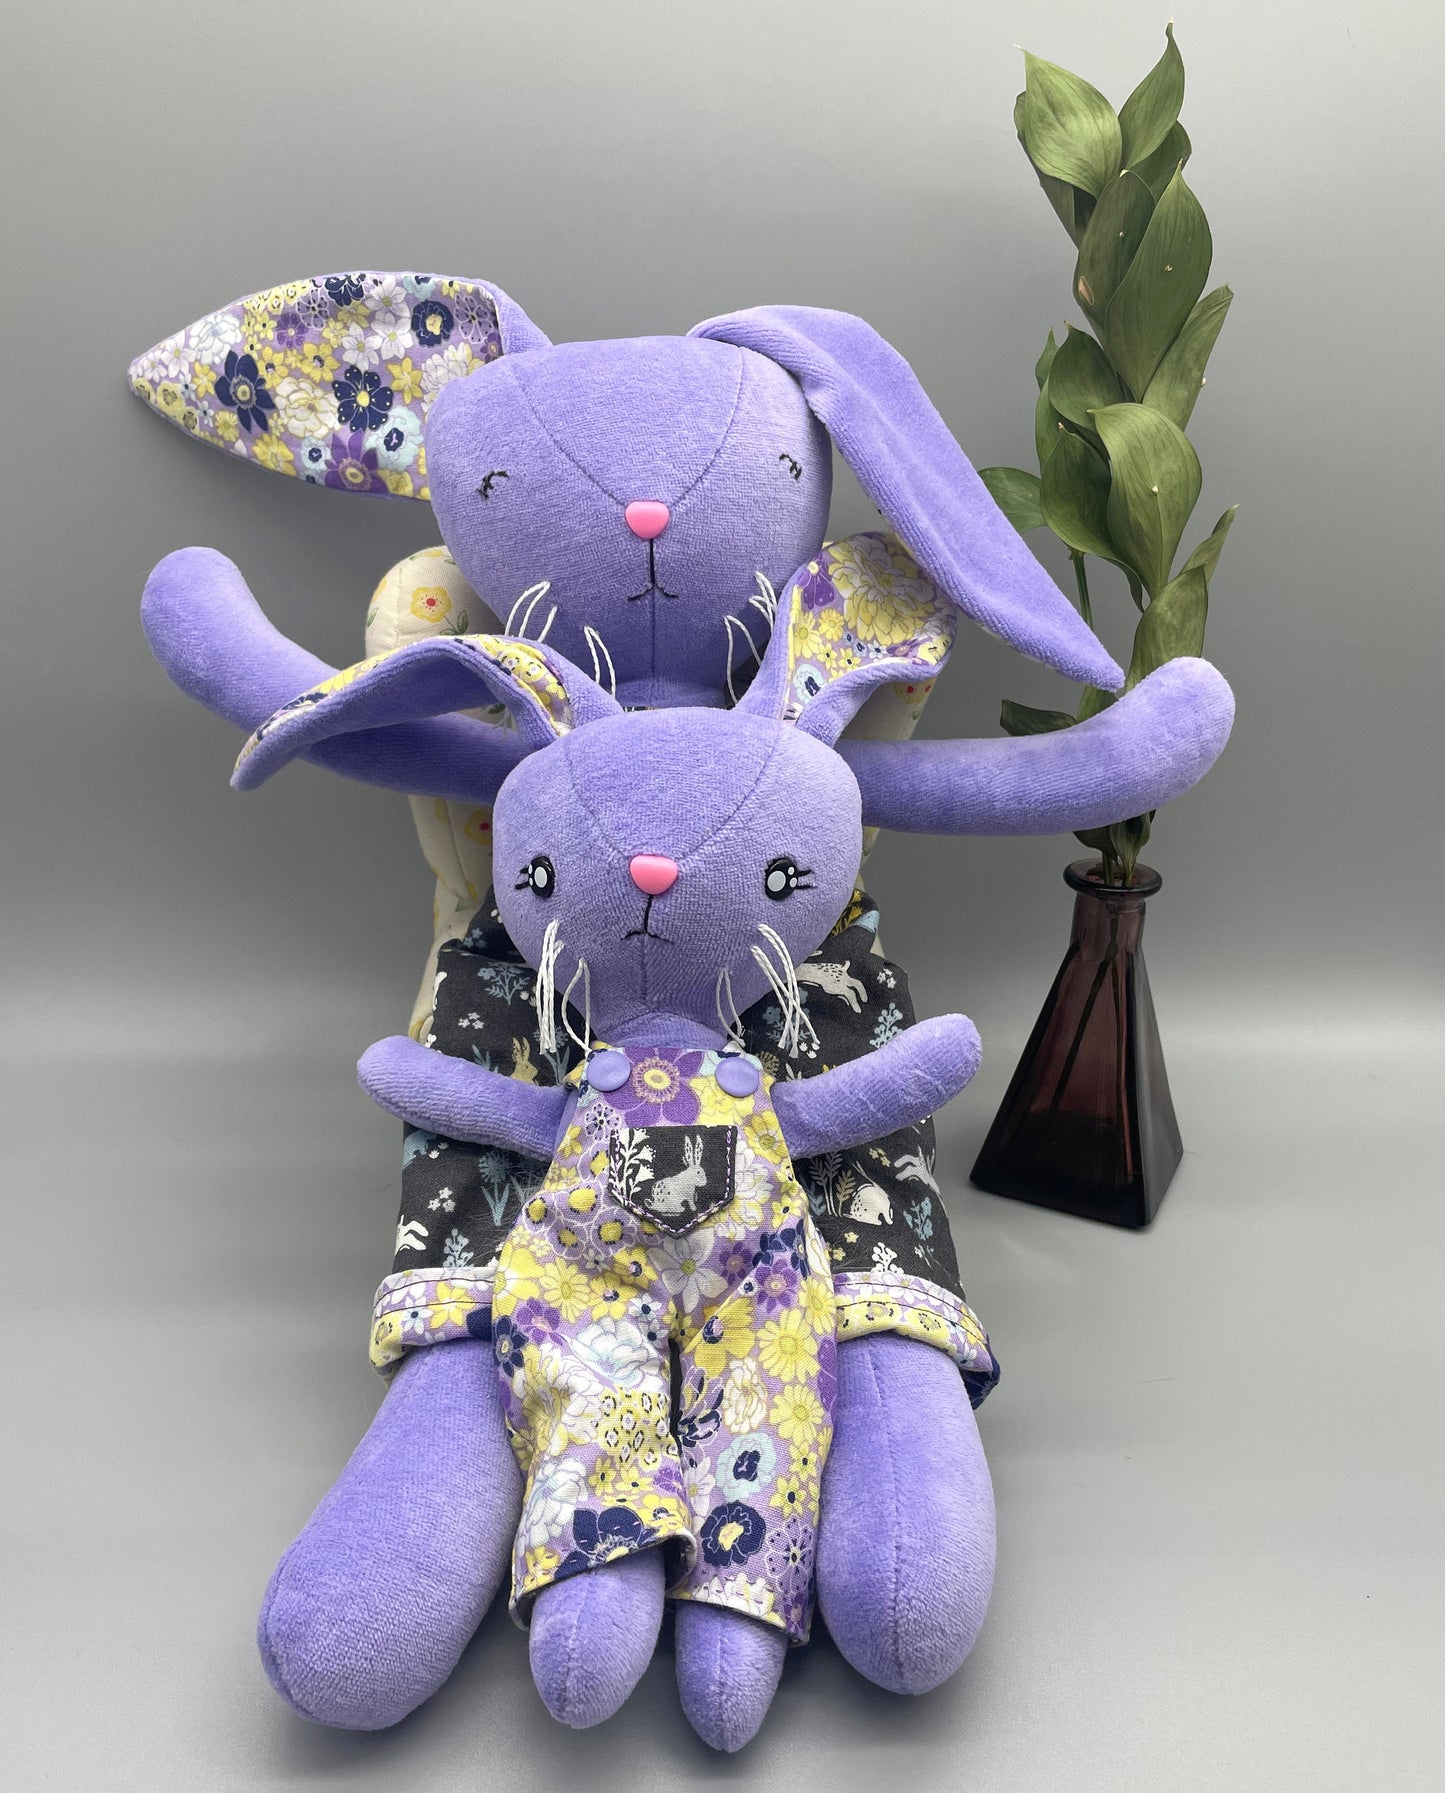 Reversible Handmade Easter Bunny, "BIRGITTA", Stuffed animal, girl boy easter basket, plush rabbit, easter gifts, gift for kids, Easter Doll